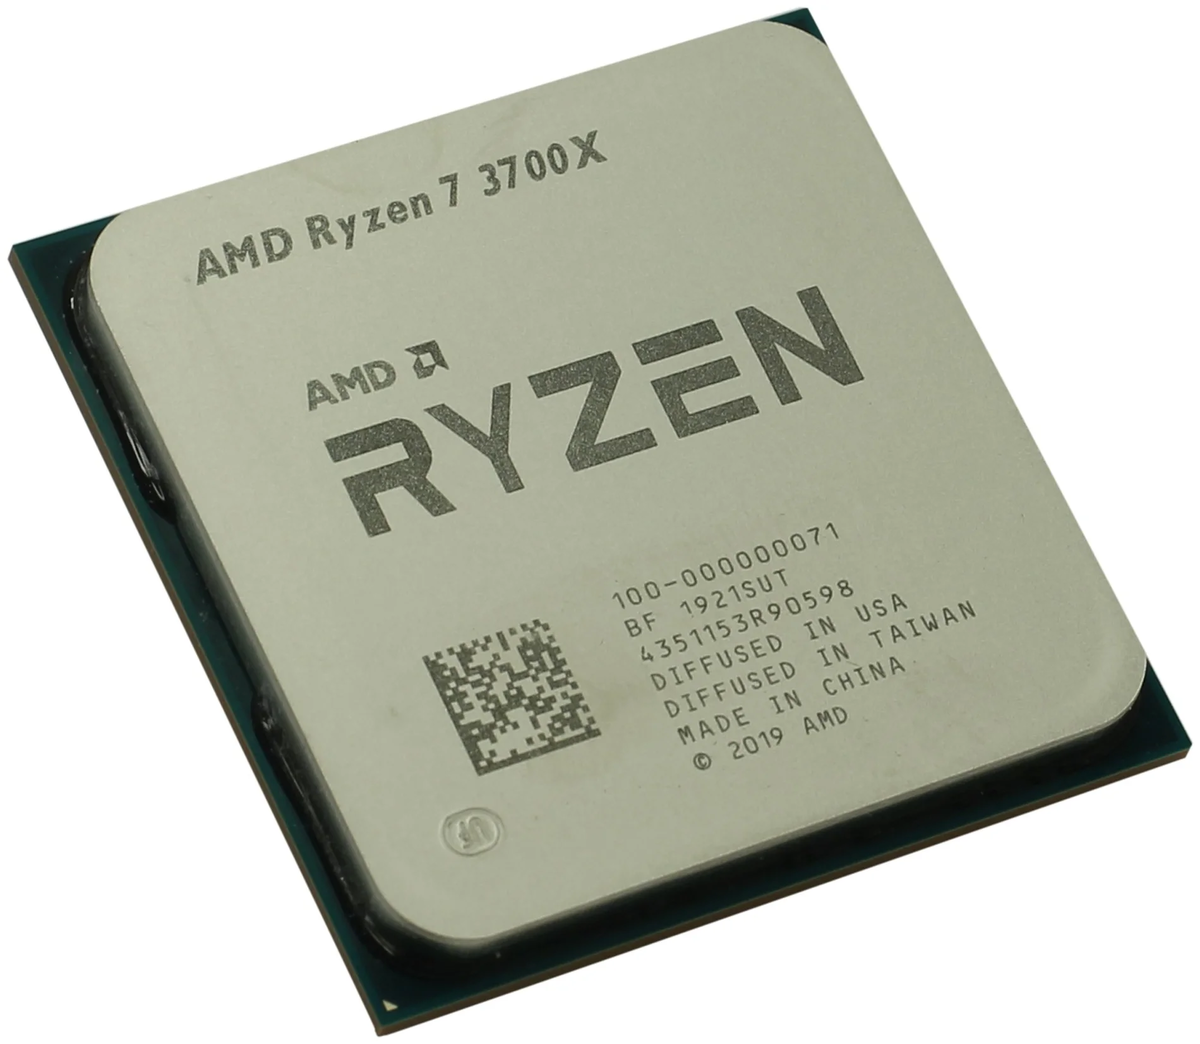 Рассмотрим лучшие игровые процессоры AMD Ryzen 7 для сокета АМ4 в среднем ценовом сегменте. Технические характеристики, описания и сравнения самых популярных моделей амд райзен.-2